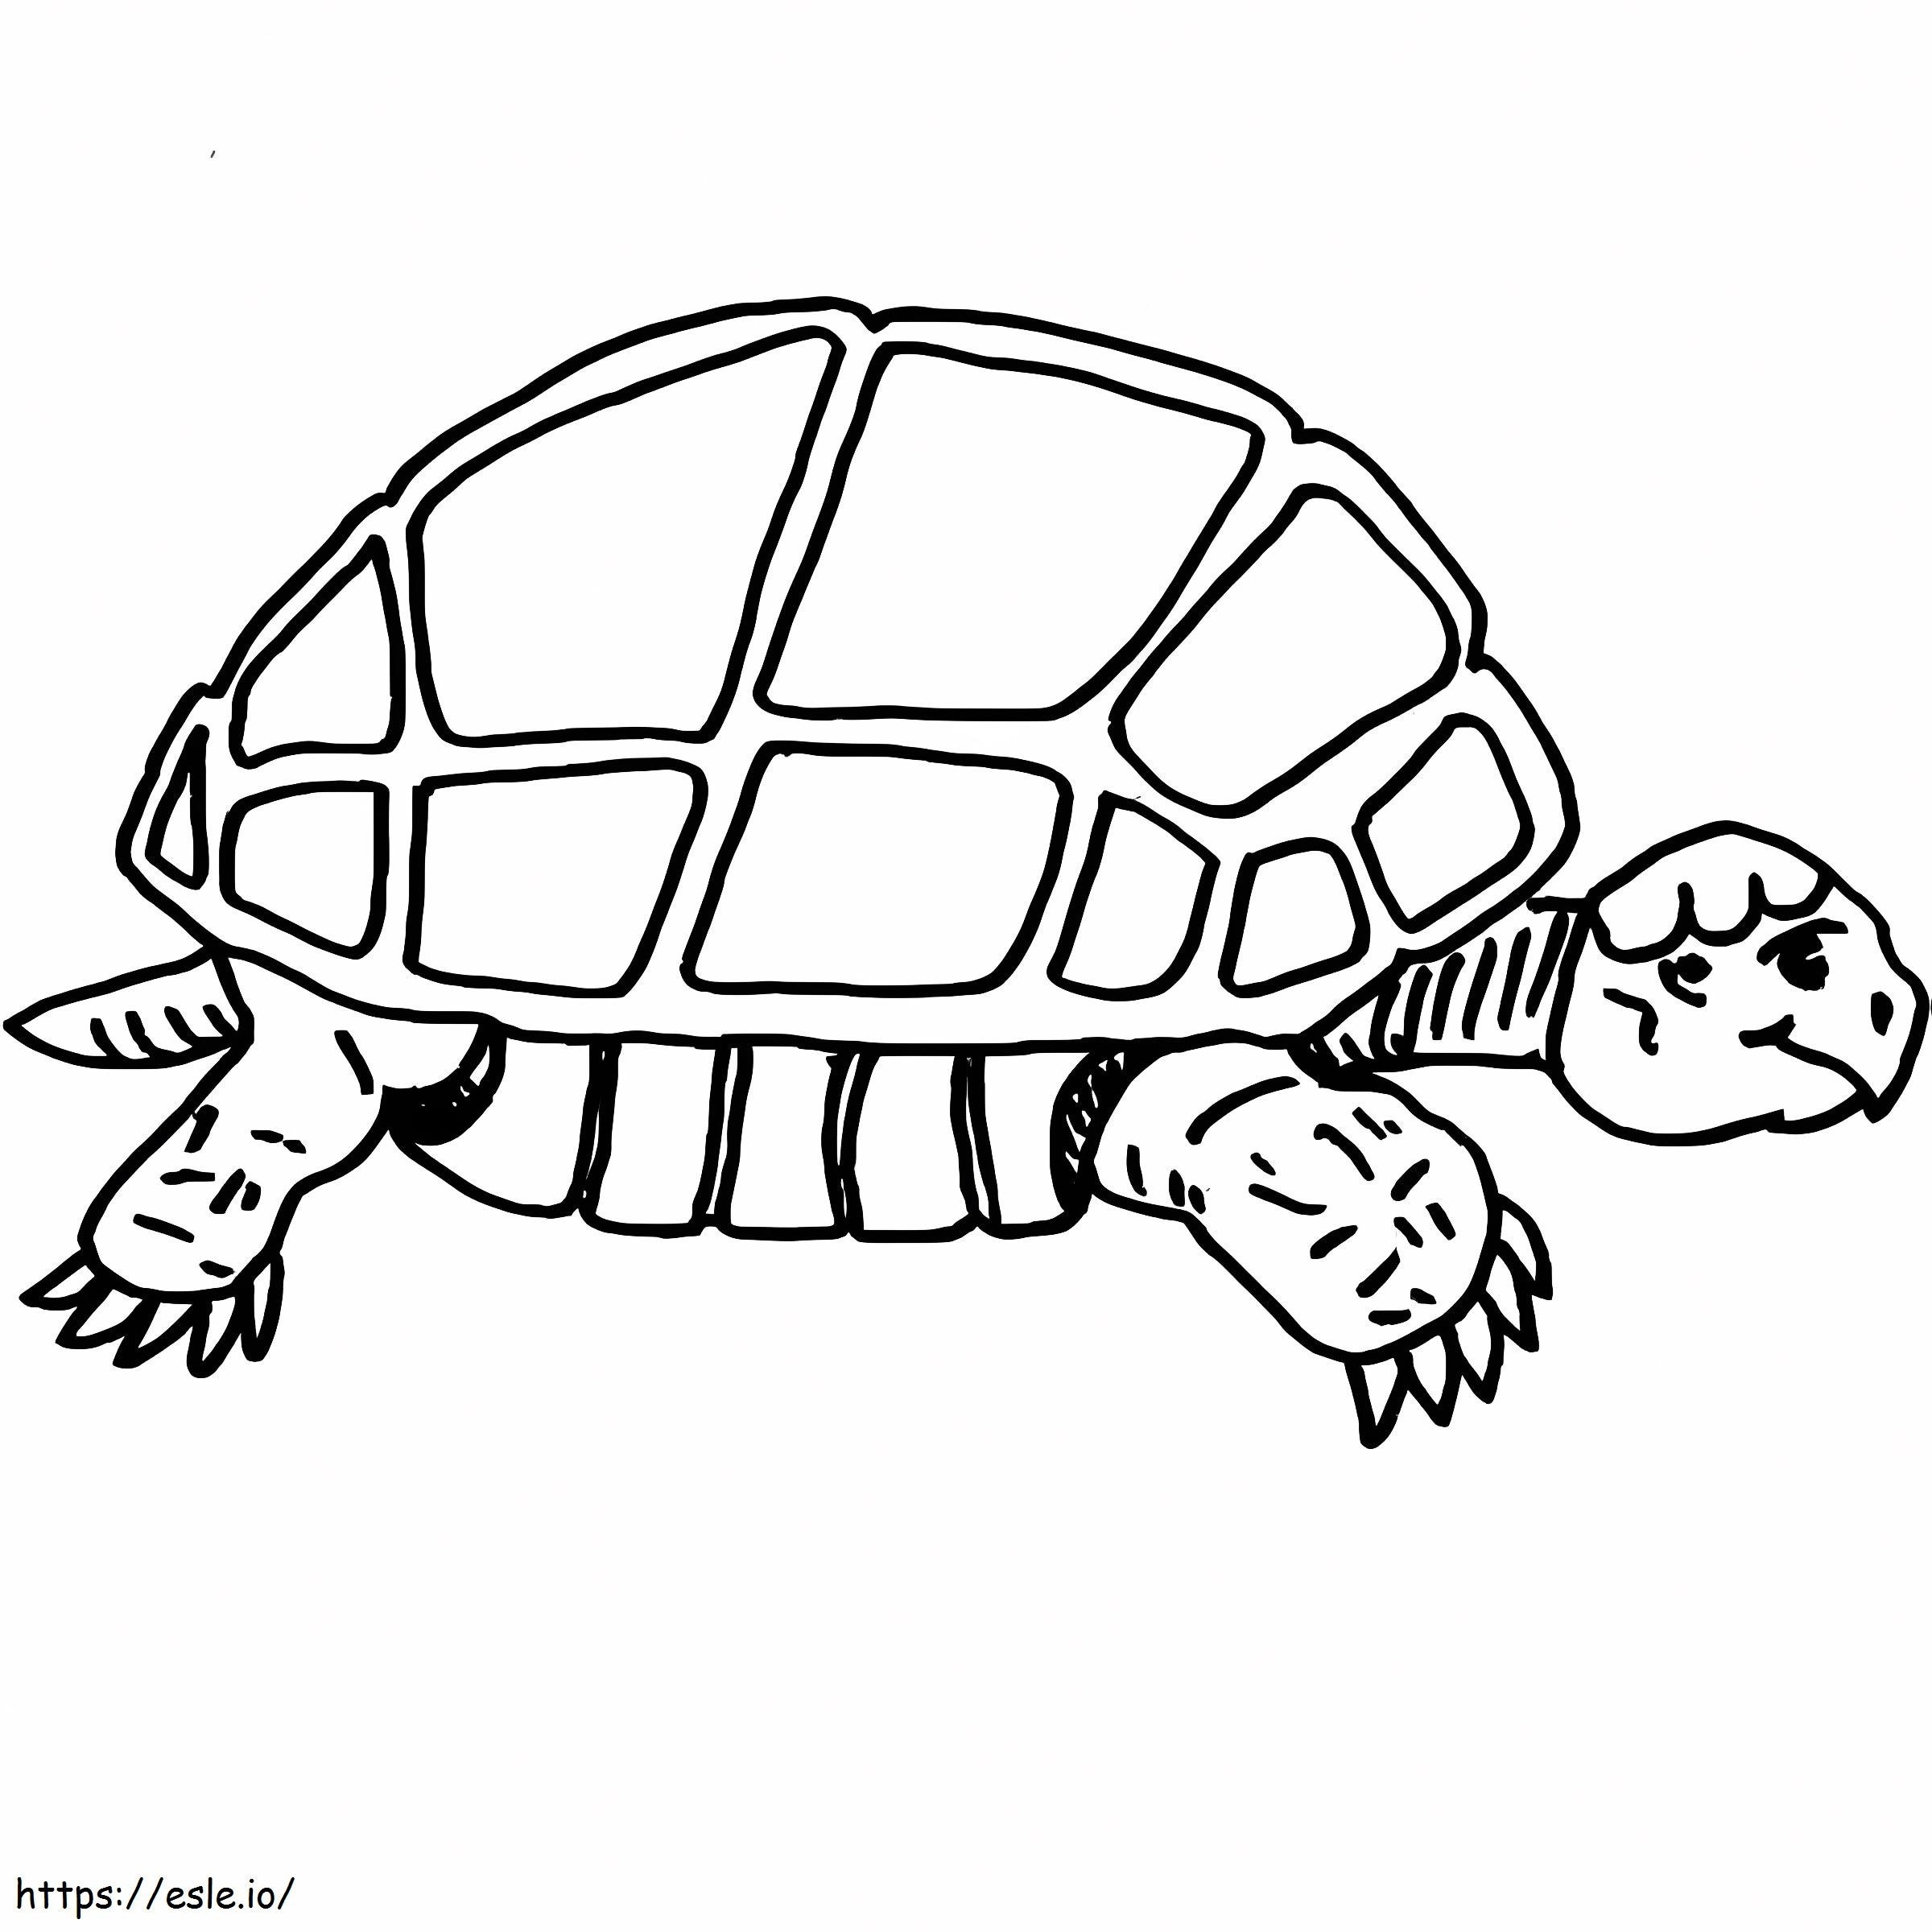 Langzame schildpad kleurplaat kleurplaat